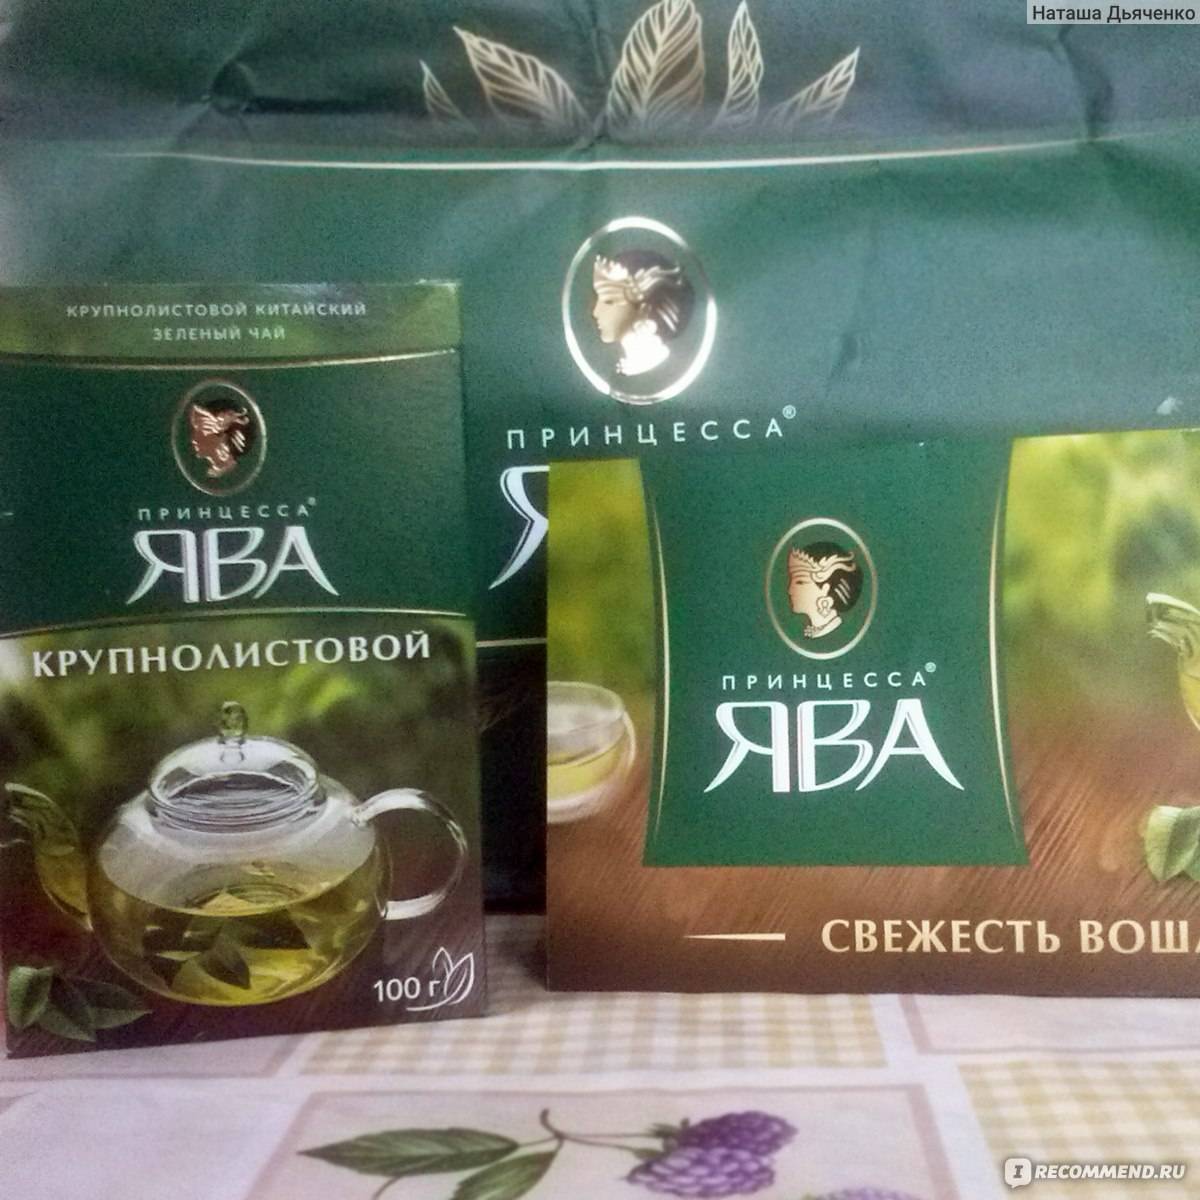 Зеленый чай ява — коллекция удивительных вкусов